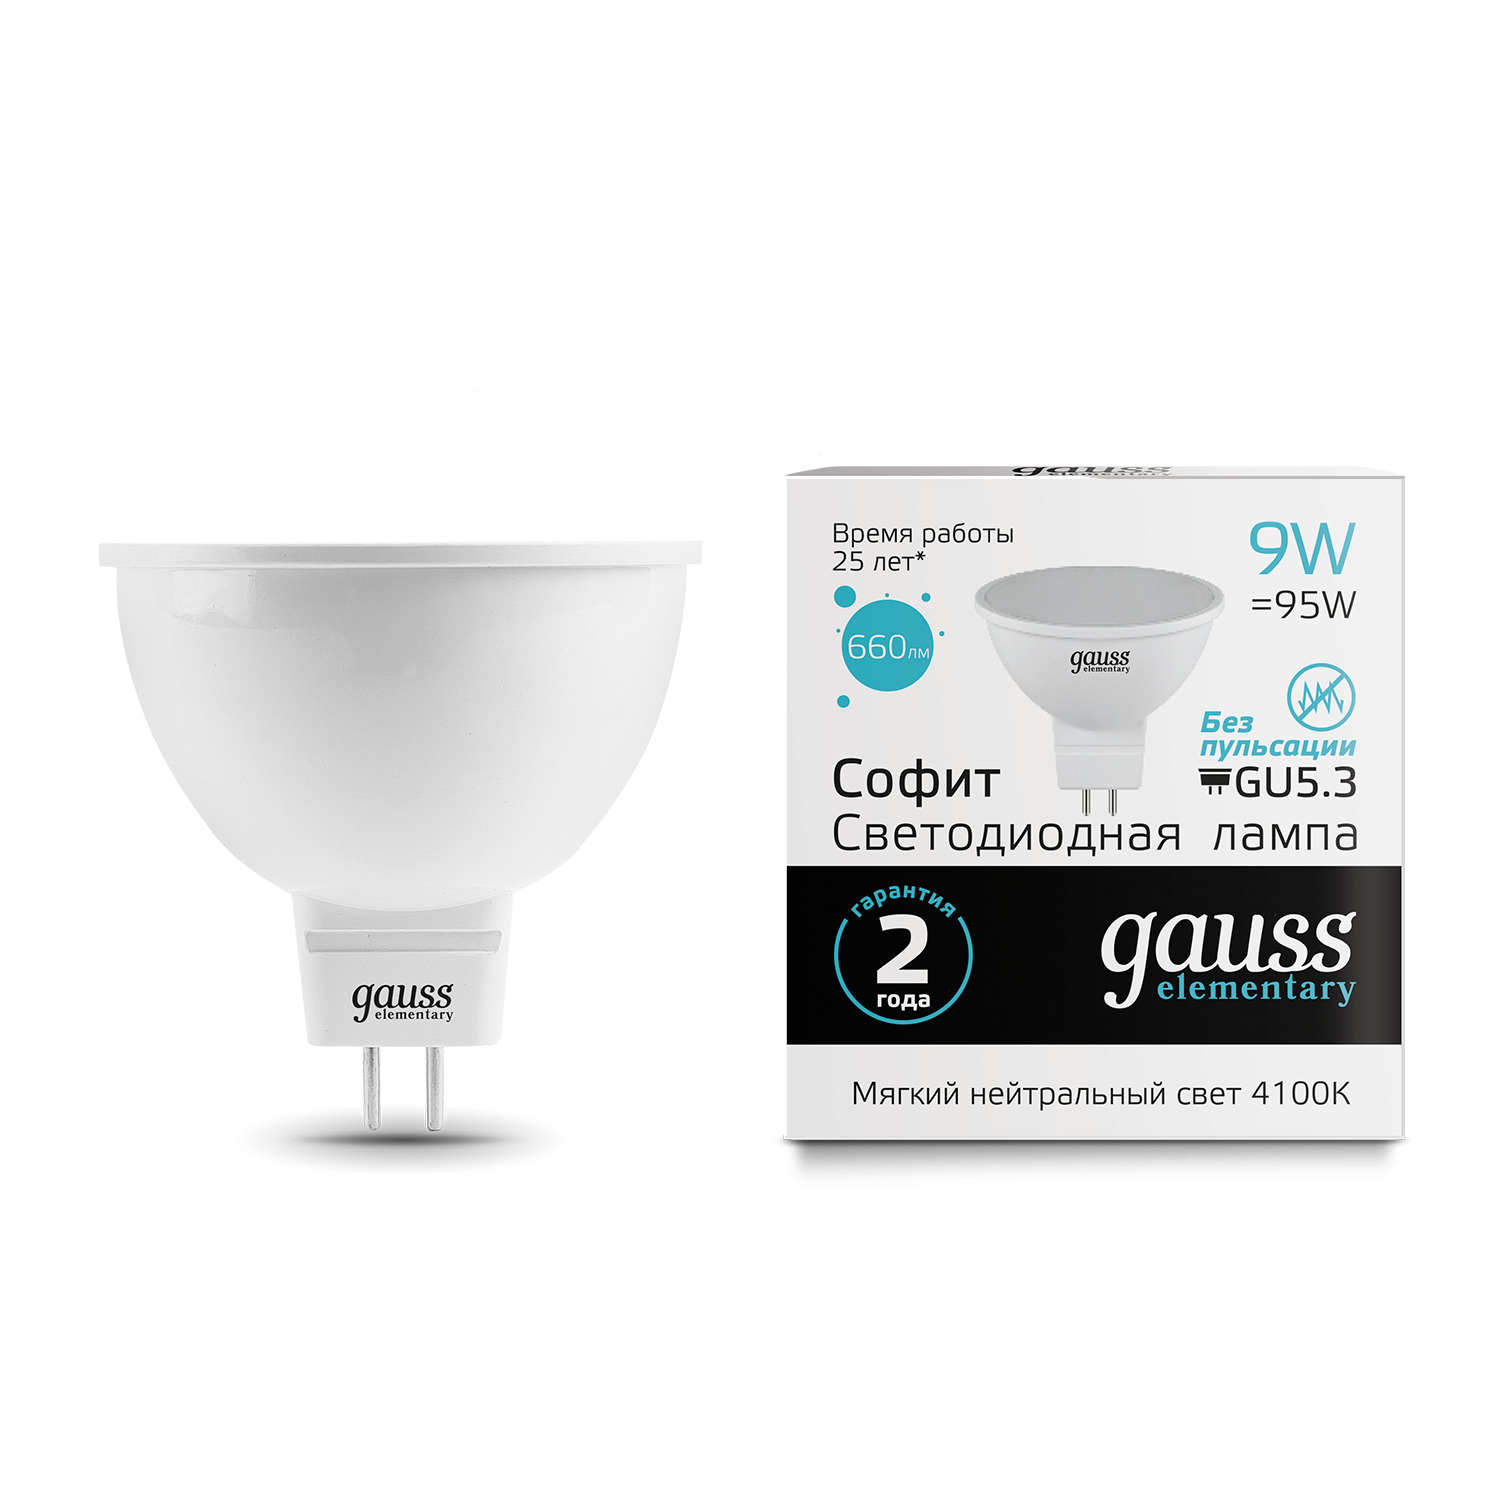 Лампа Gauss LED Elementary MR16 GU5.3 9W 4100K